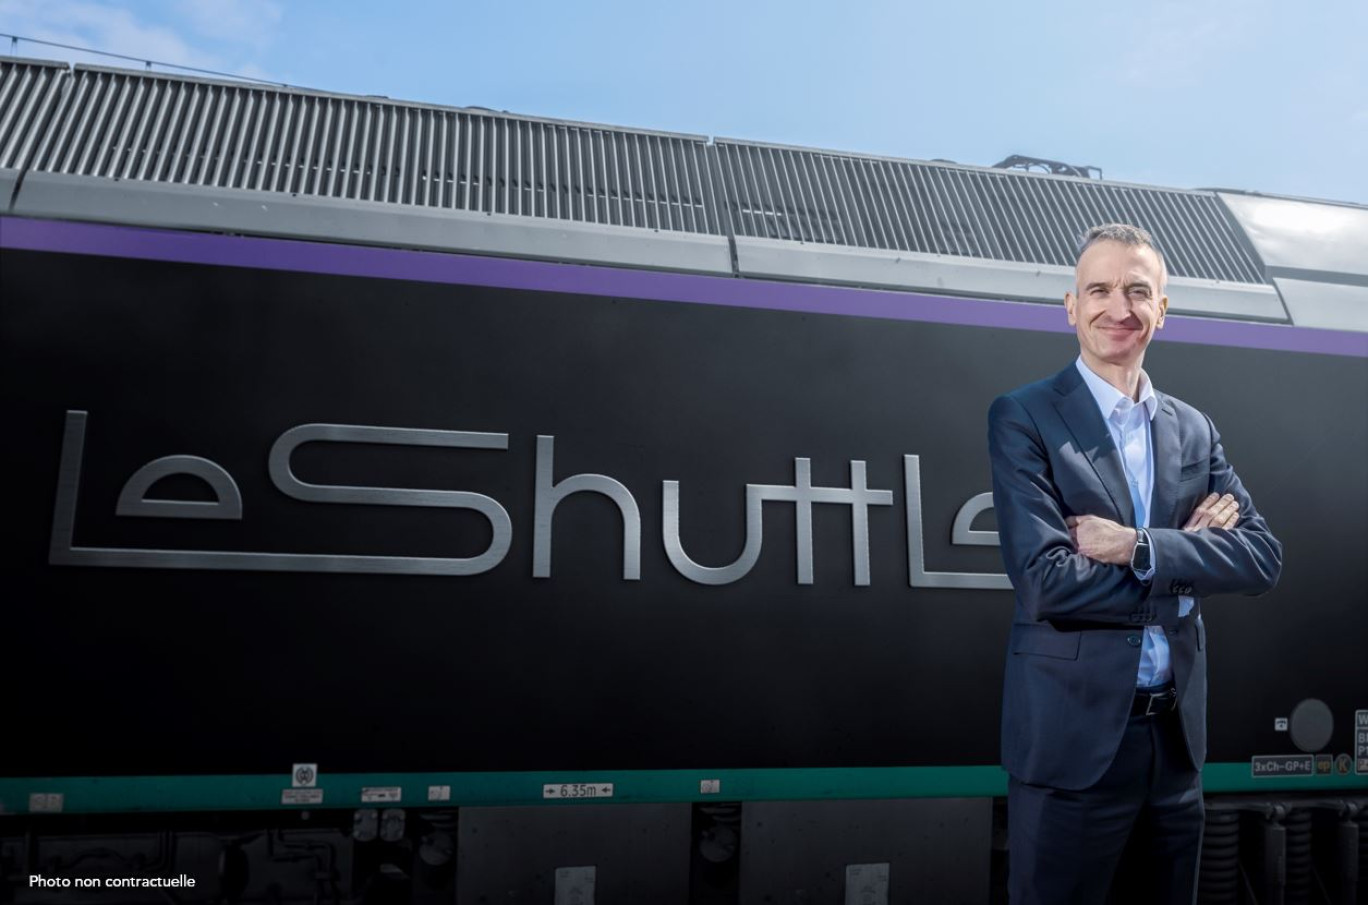 Yann Leriche, directeur général du groupe Getlink, au côté du nouveau logo du Shuttle. © Getlink